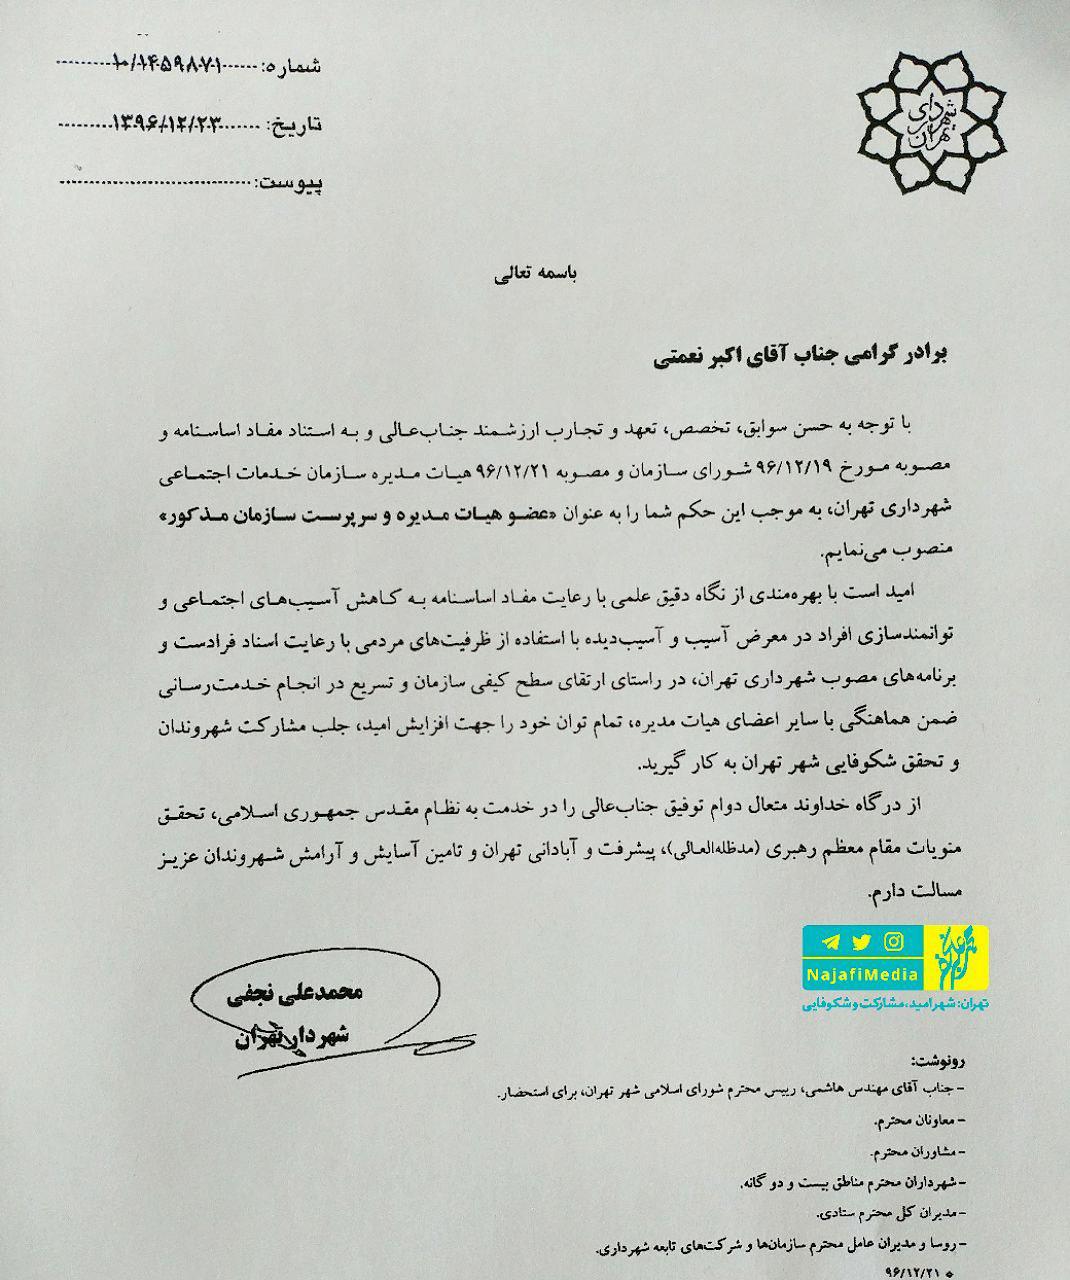 انتصاب تامل برانگیز شهردار تهران در حاشیه های استعفا